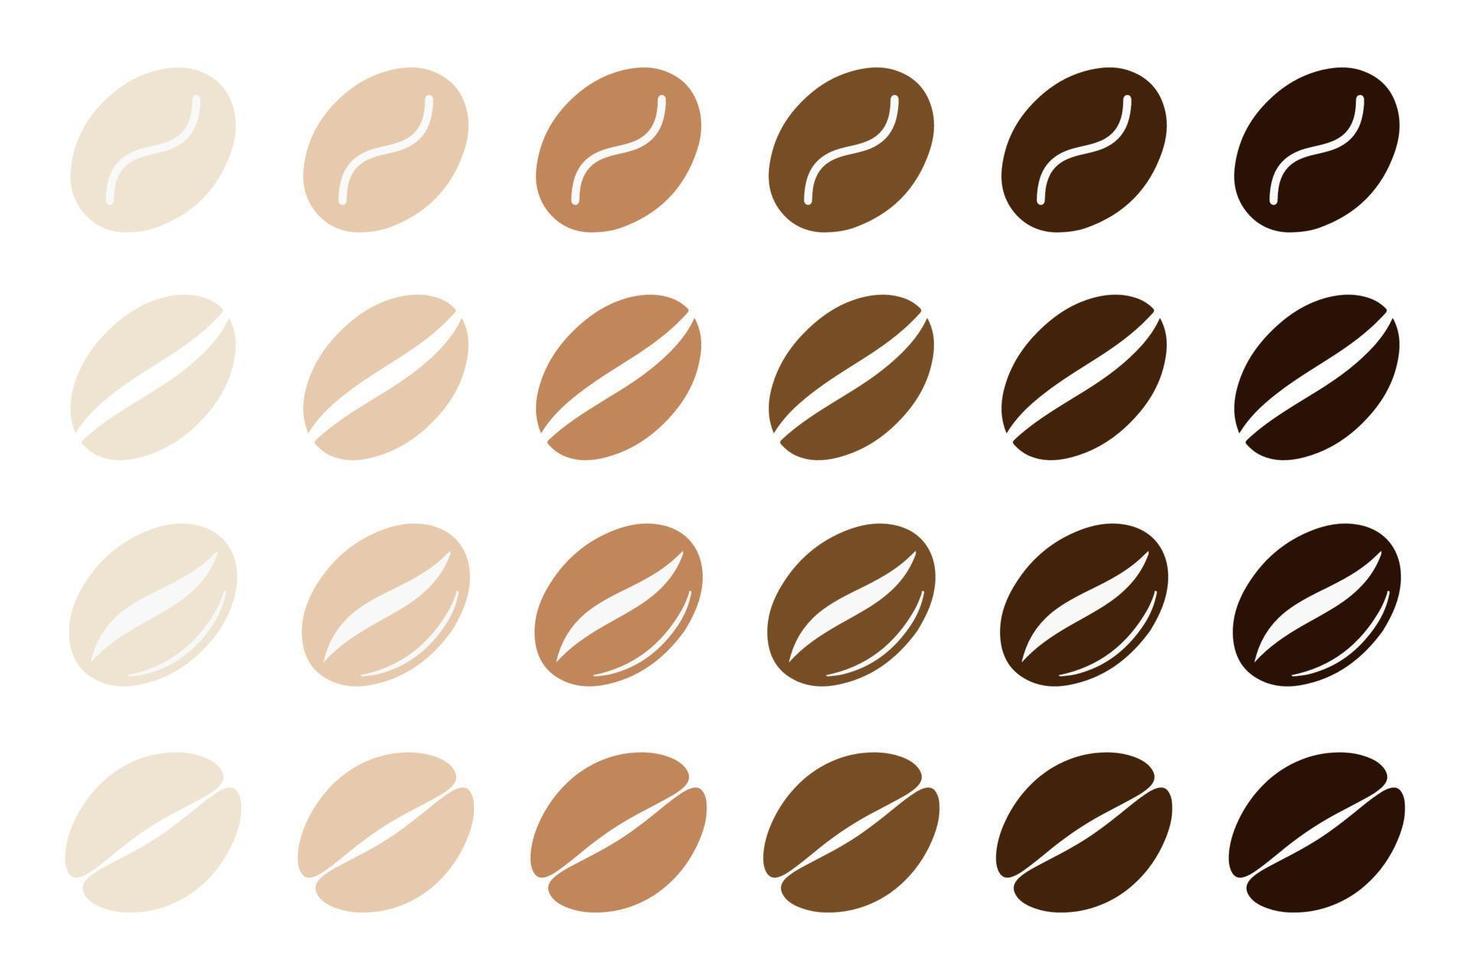 grains de café en plusieurs variétés. illustration de stock de vecteur. vecteur